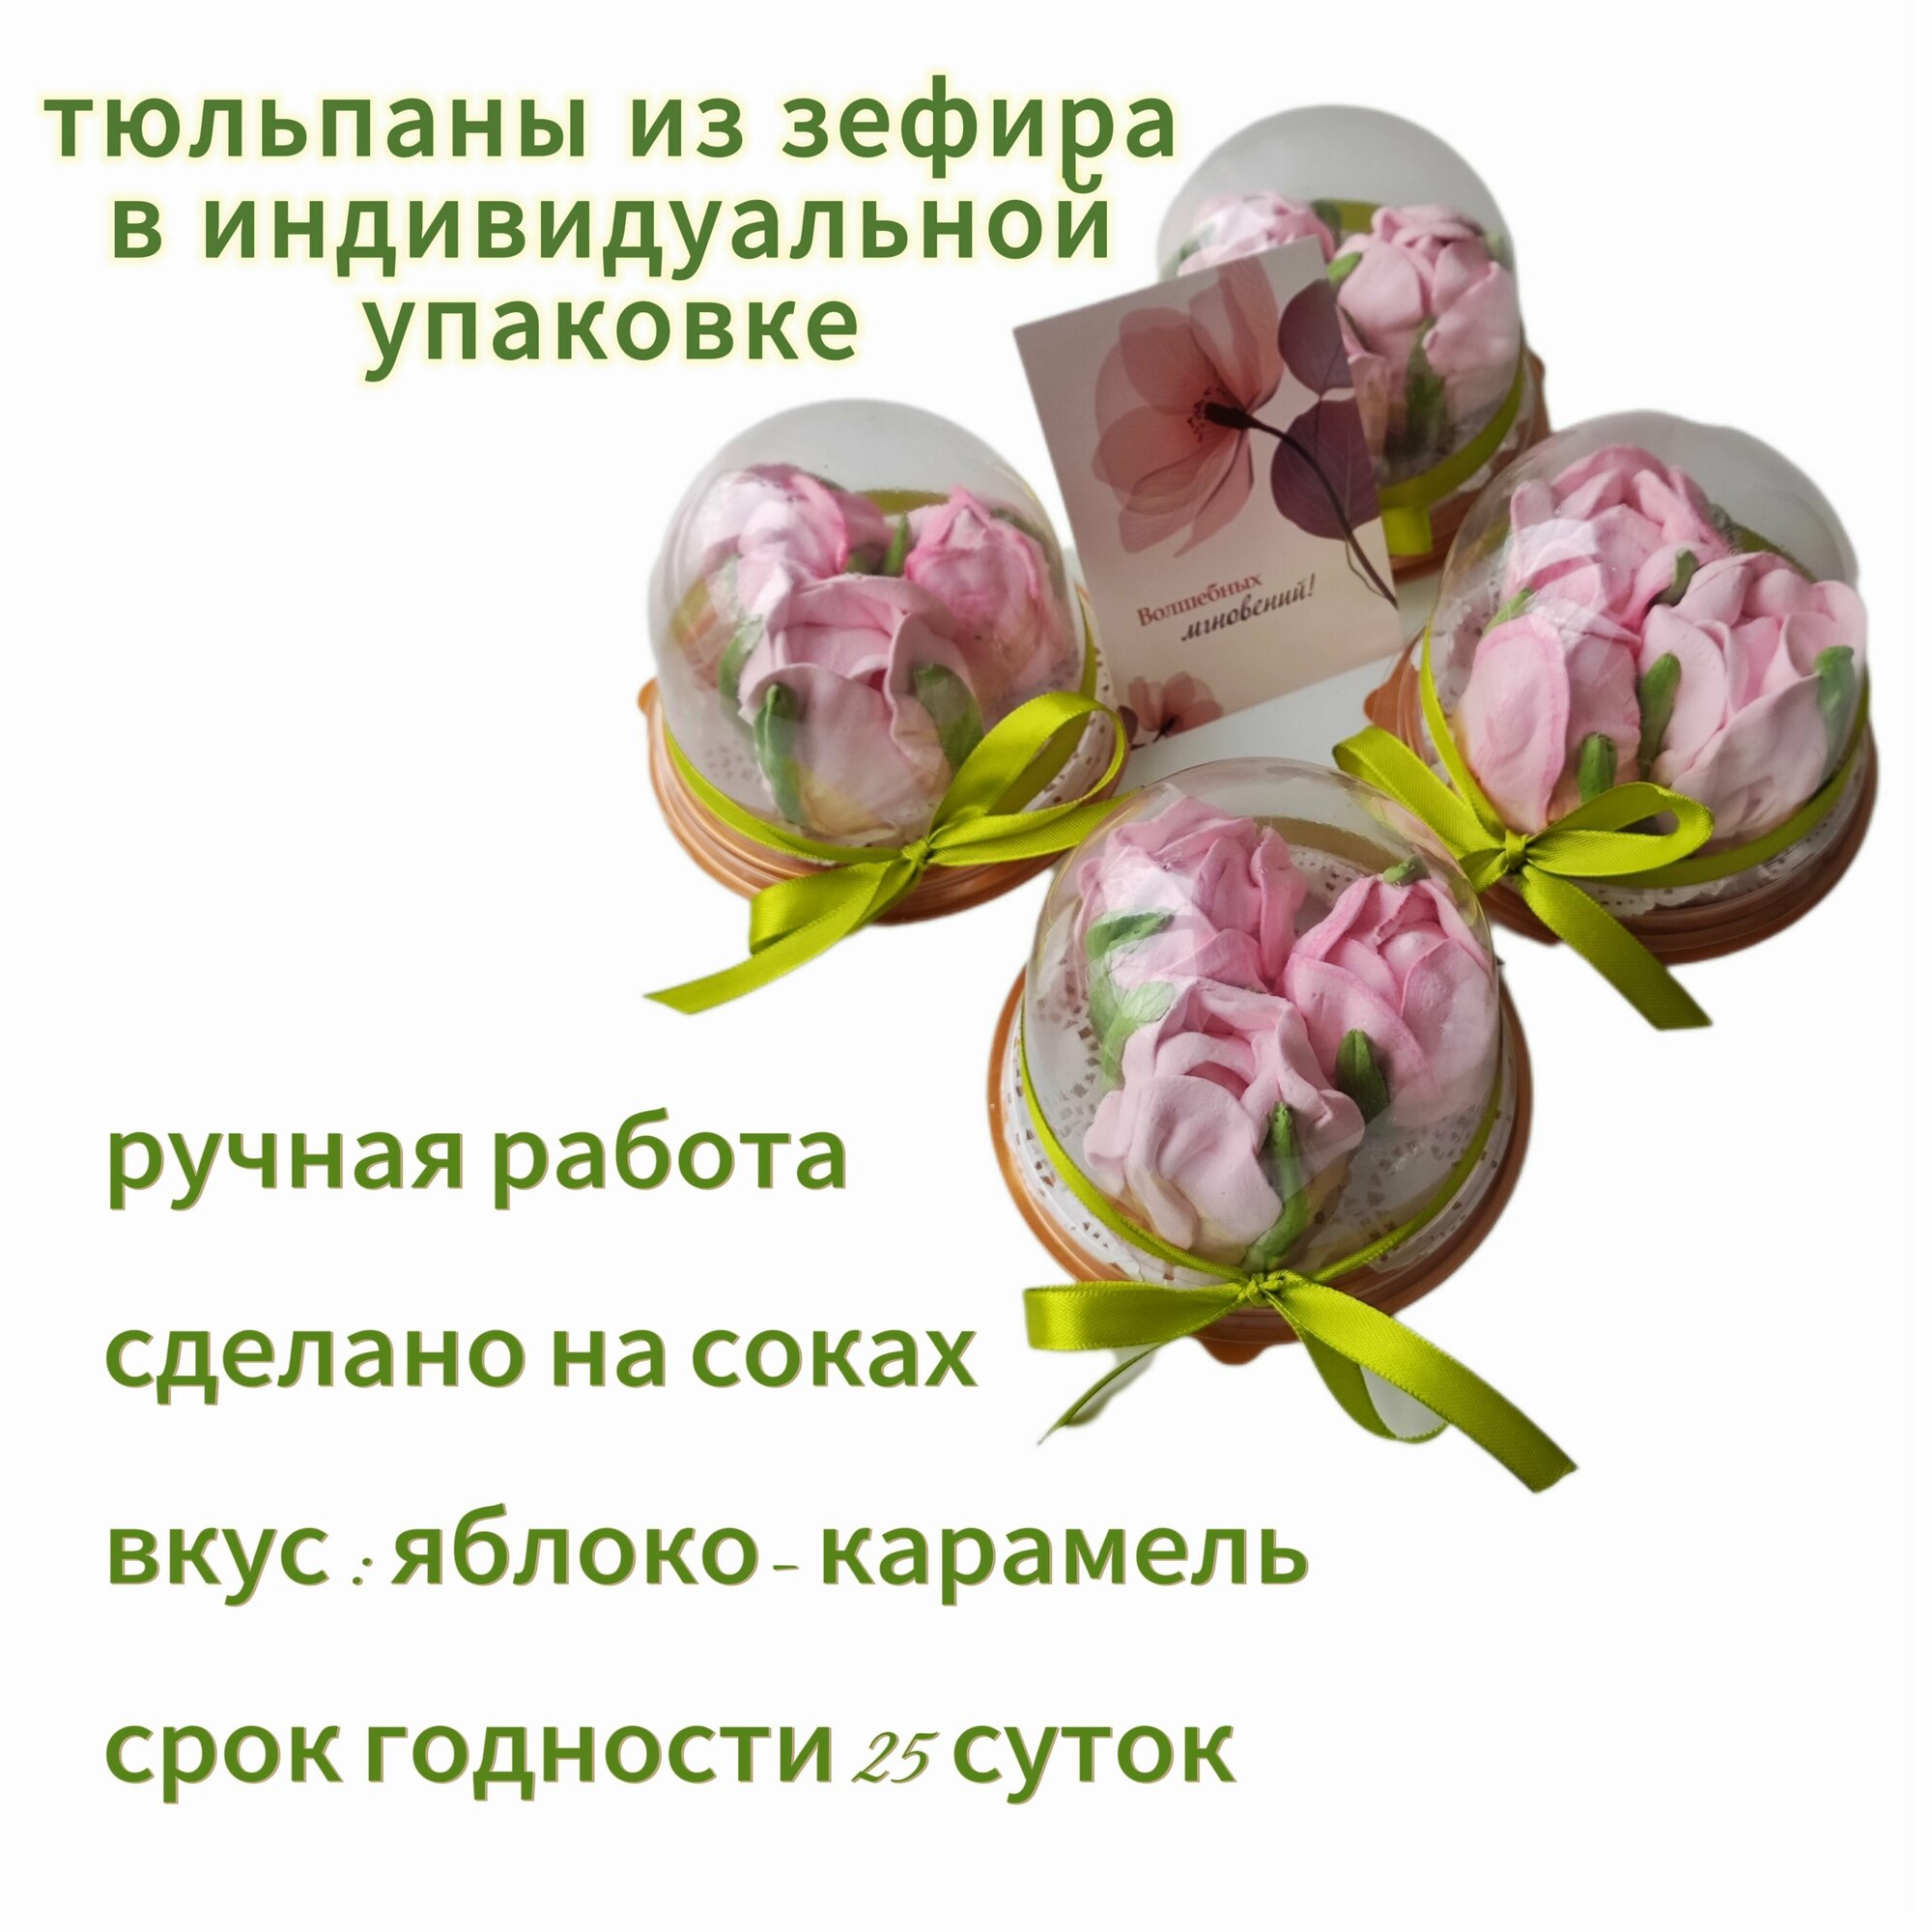 Зефирные цветы тюльпаны ручной работы в колбе 4 штуки со вкусом яблоко карамель на день рождение маме, девушке, женщине, воспитателю, учителю на выпускной.